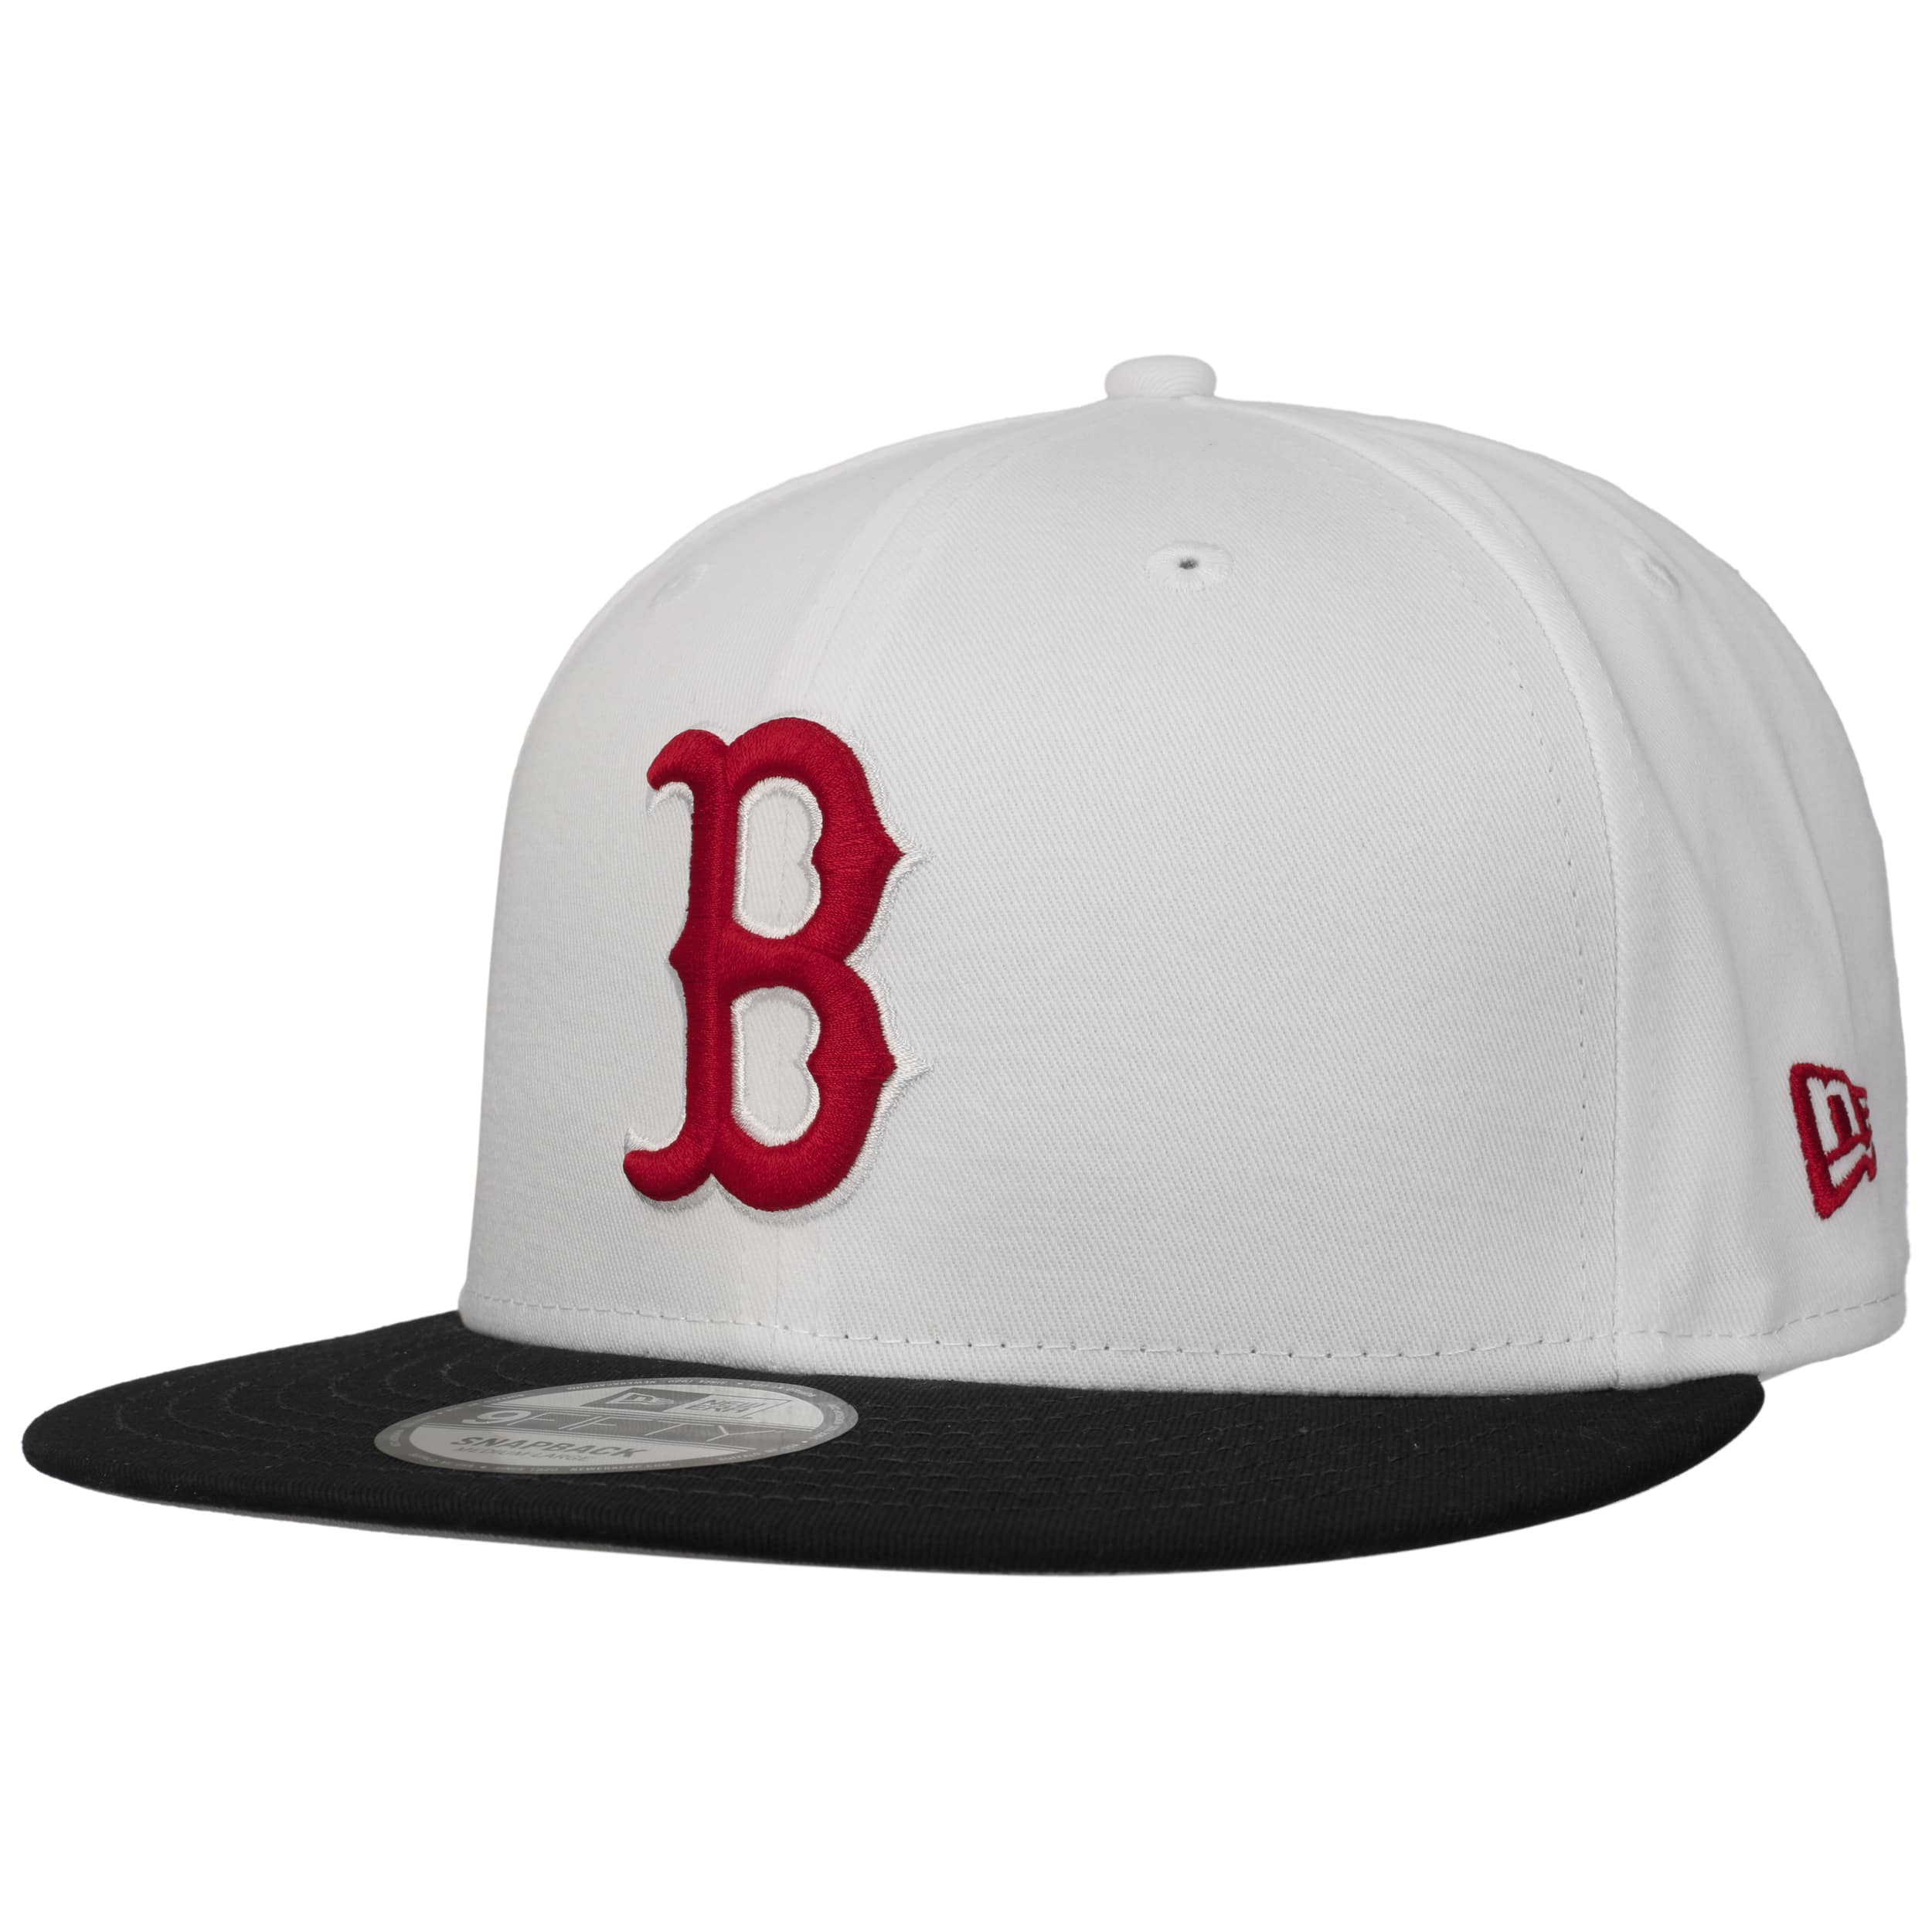 Minhshopvn  Nón MLB New Fit Structure Ball Cap Boston Red Sox  3acp0802n  43rds 